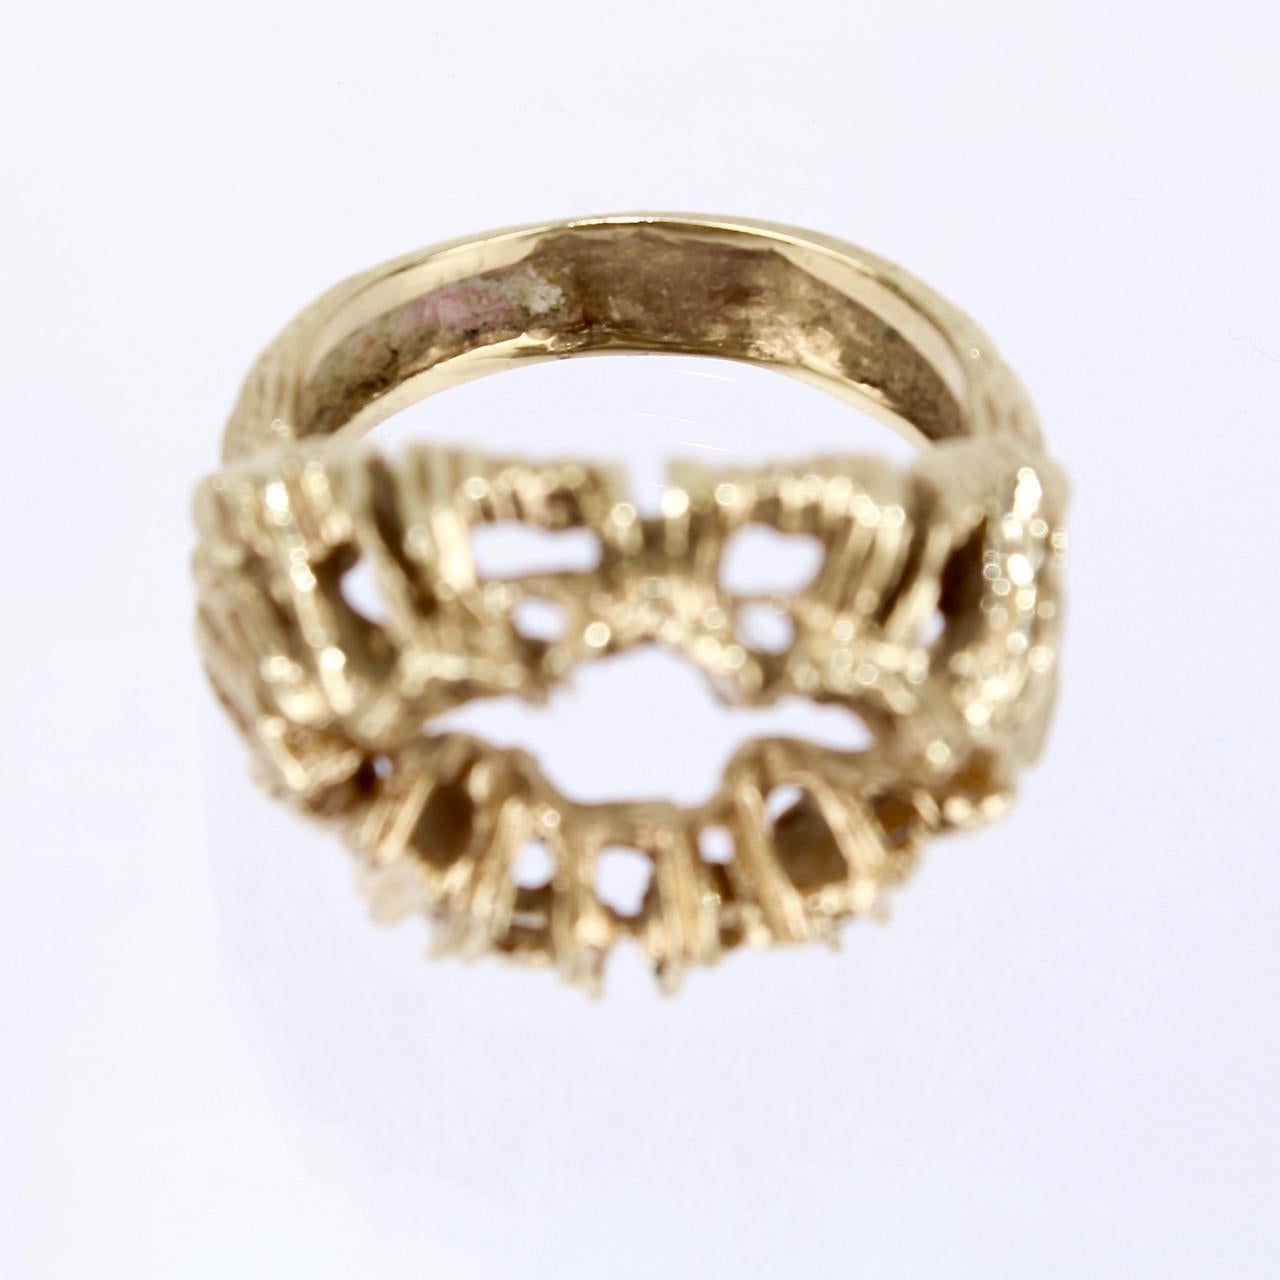 Fine Sculptural Brutalist 14 Karat Gold Ring with an Openwork Matrix 5